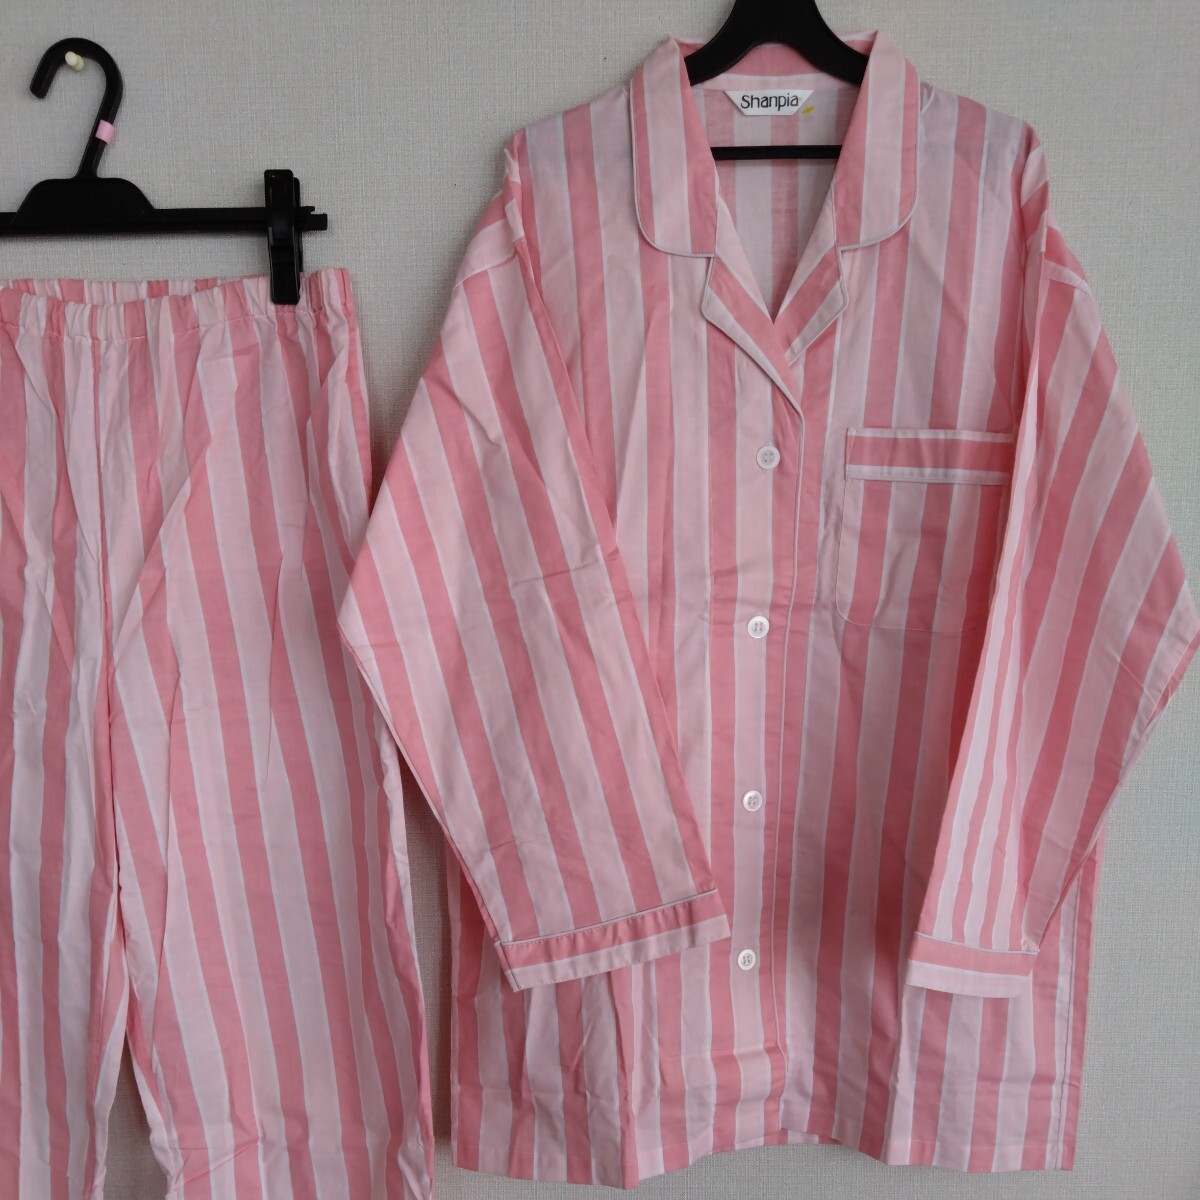 新品　パジャマ☆ピンク濃淡&白☆爽やか、可愛いシンプルなデザイン☆サイズL、ゆったりサイズです。LLの方にも。☆洗い替え、普段使いに。_LですがLLの方も可能なゆったりサイズ